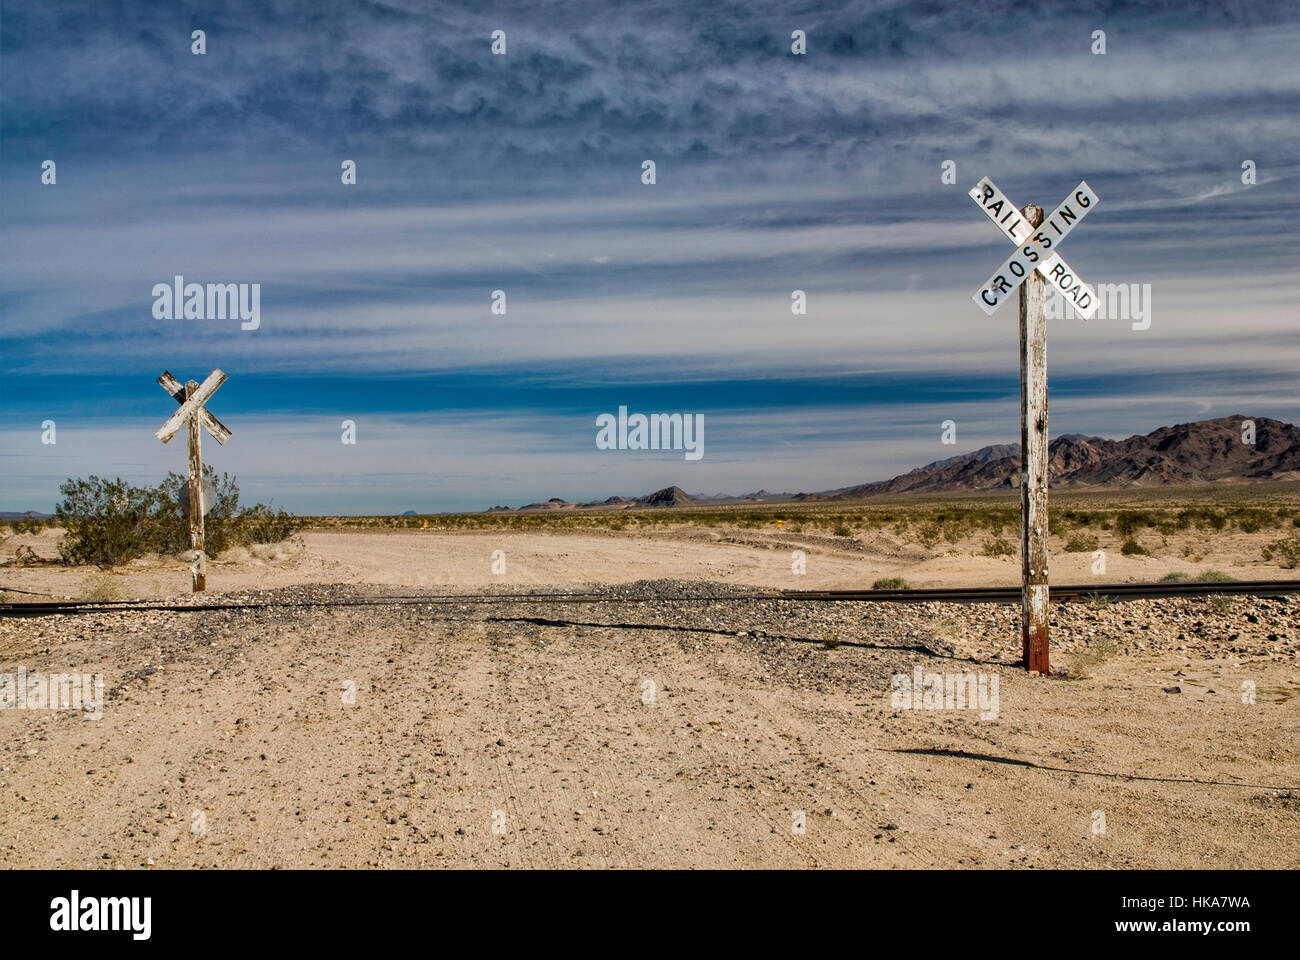 Eisenbahn Kreuzung, Cadiz Straße, Schiff Bergen in Ferne, Mojave-Wüste, Mojave Trails Nationaldenkmal, Kalifornien, USA Stockfoto